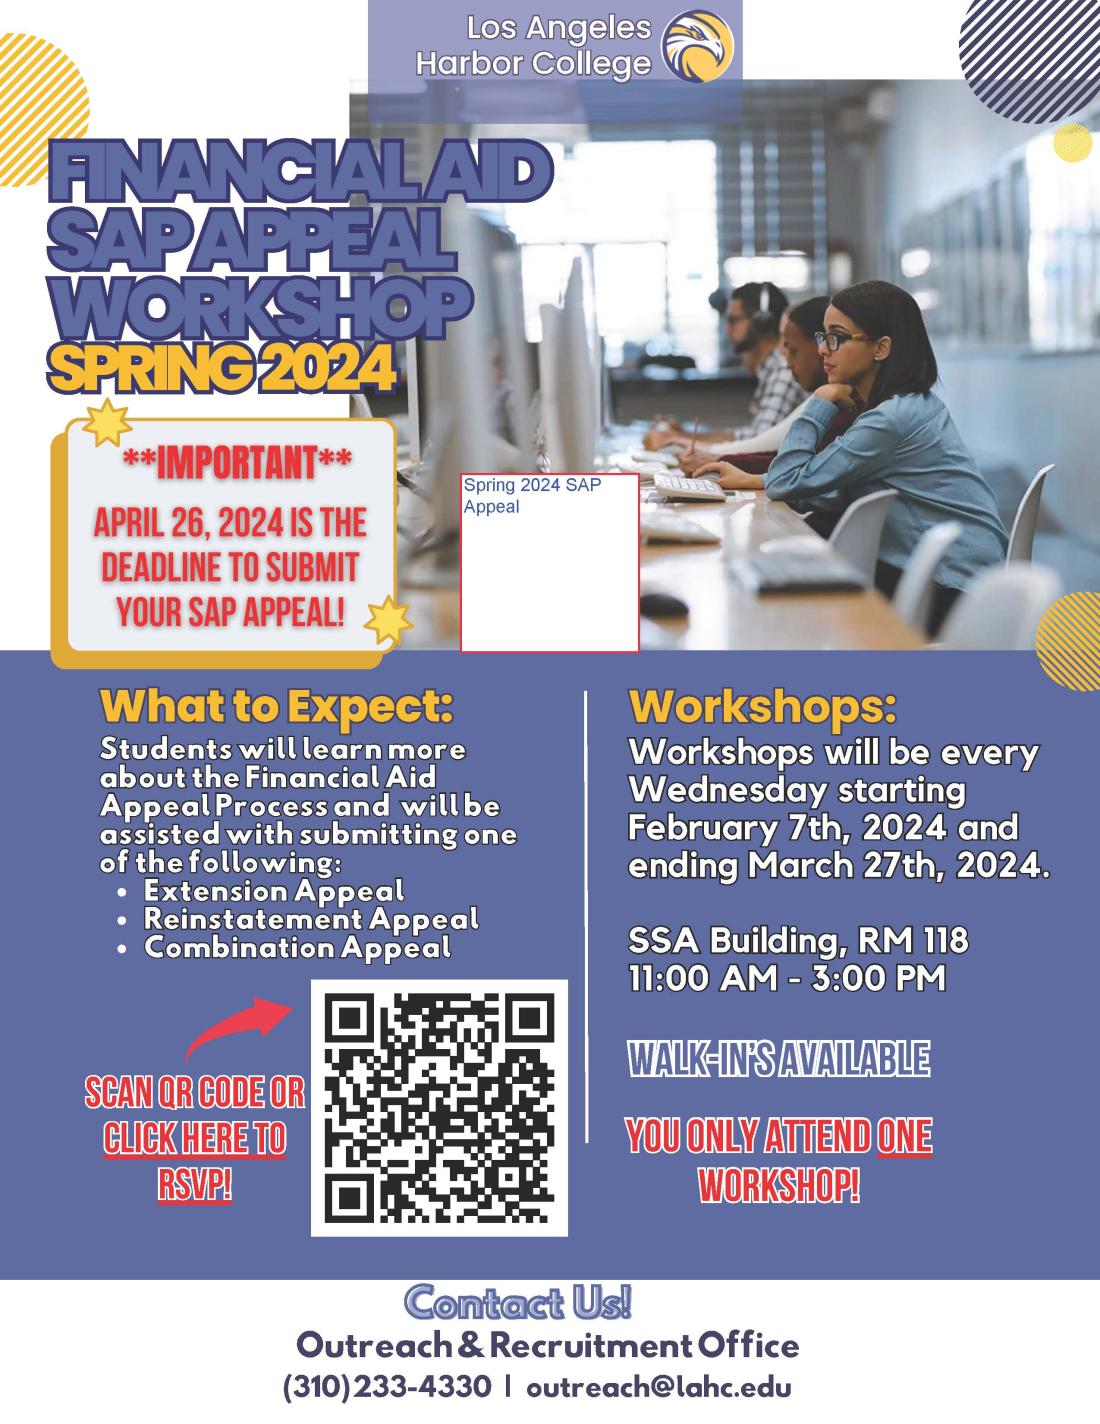 SAP Appeal Flyer - Spring 2024 workshops